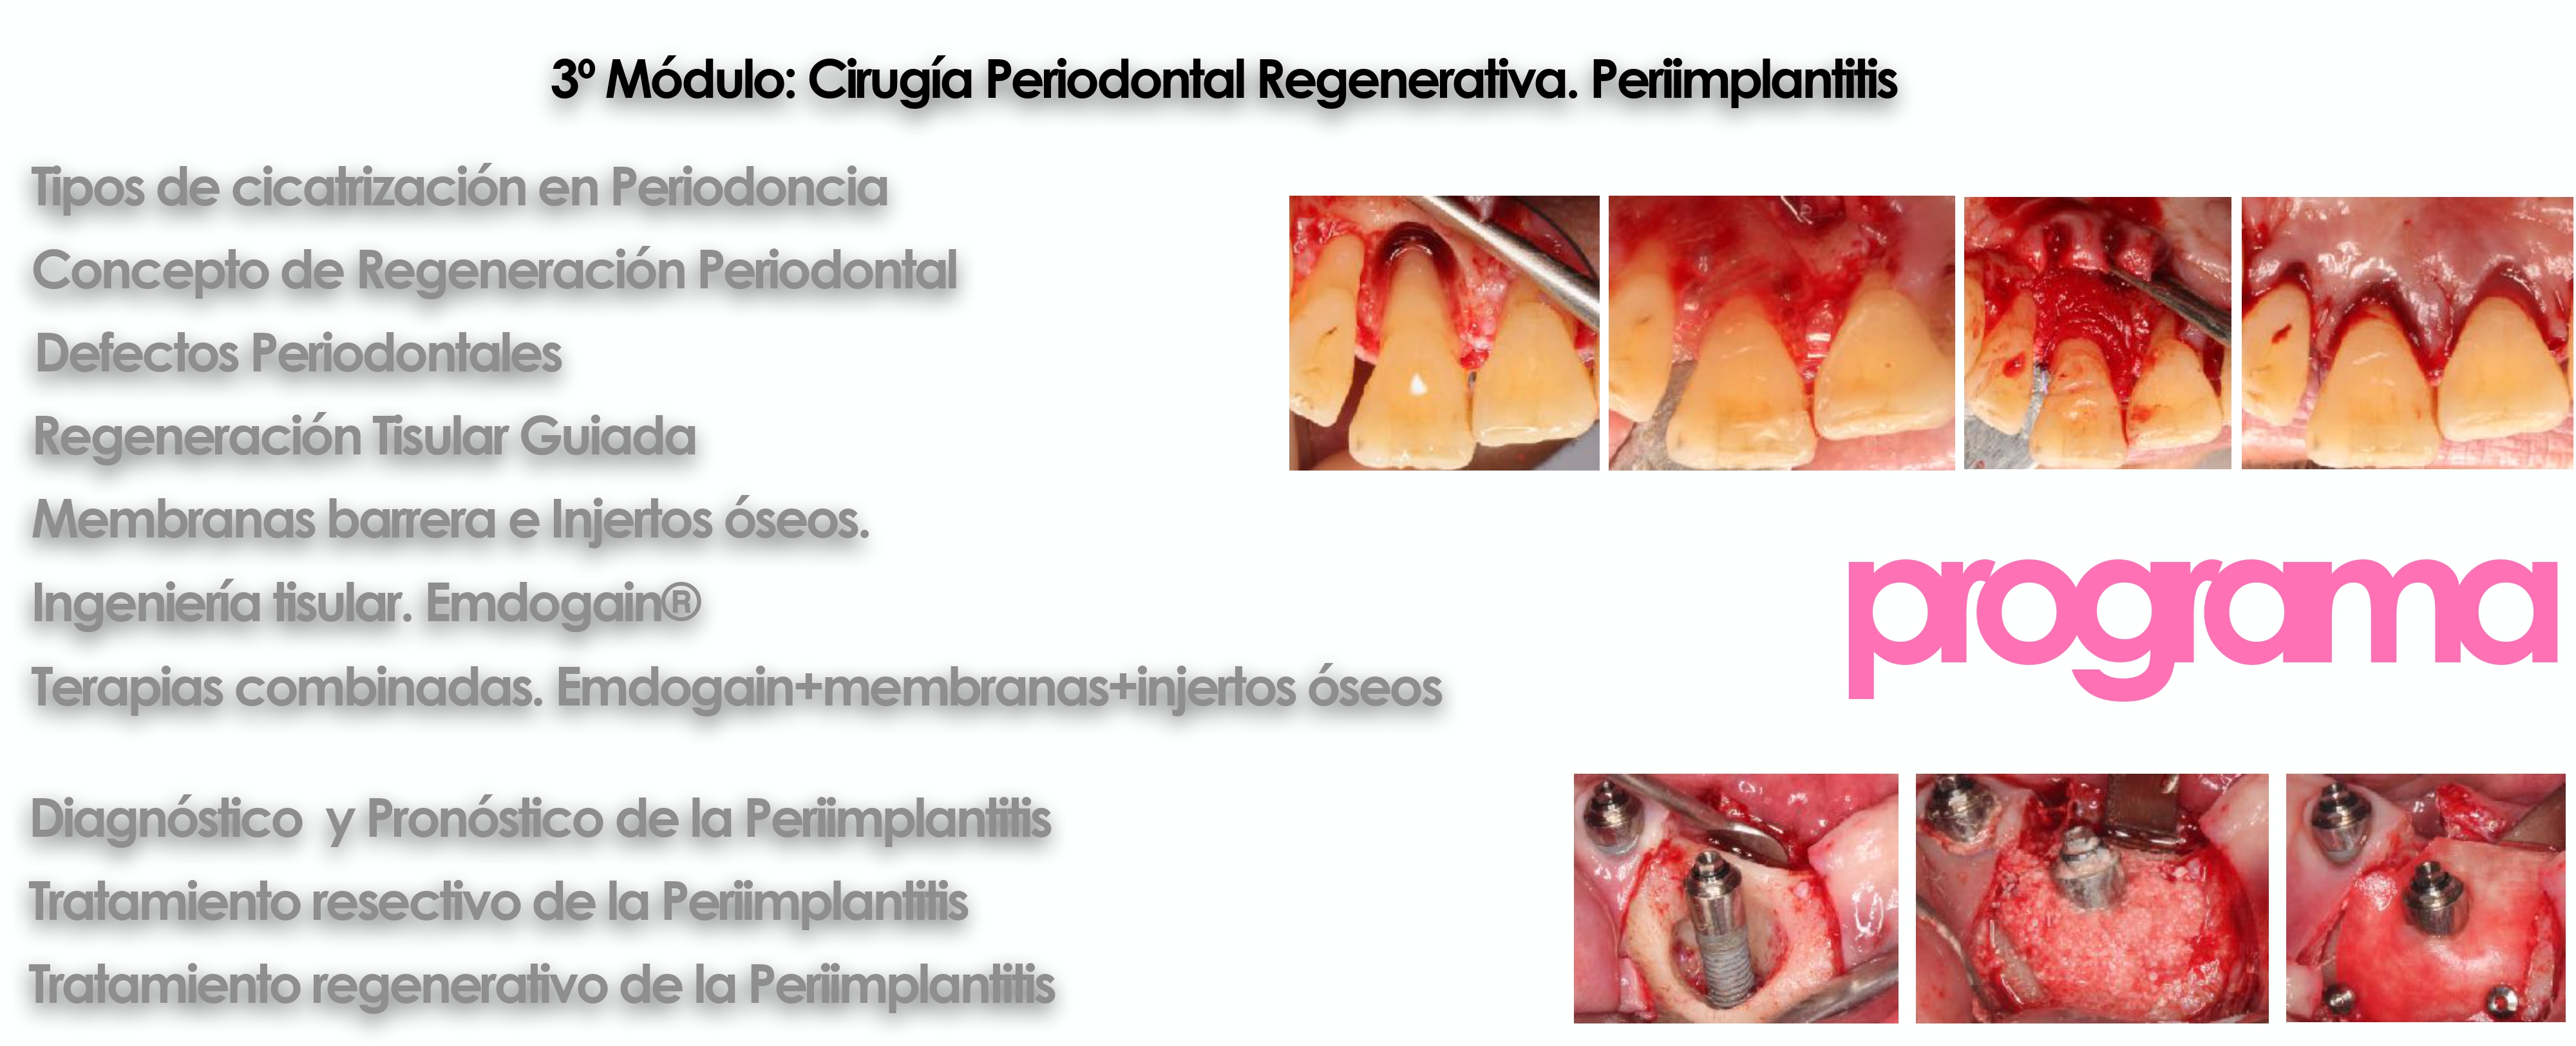 Curso cirugía periodontal e implantológica 18